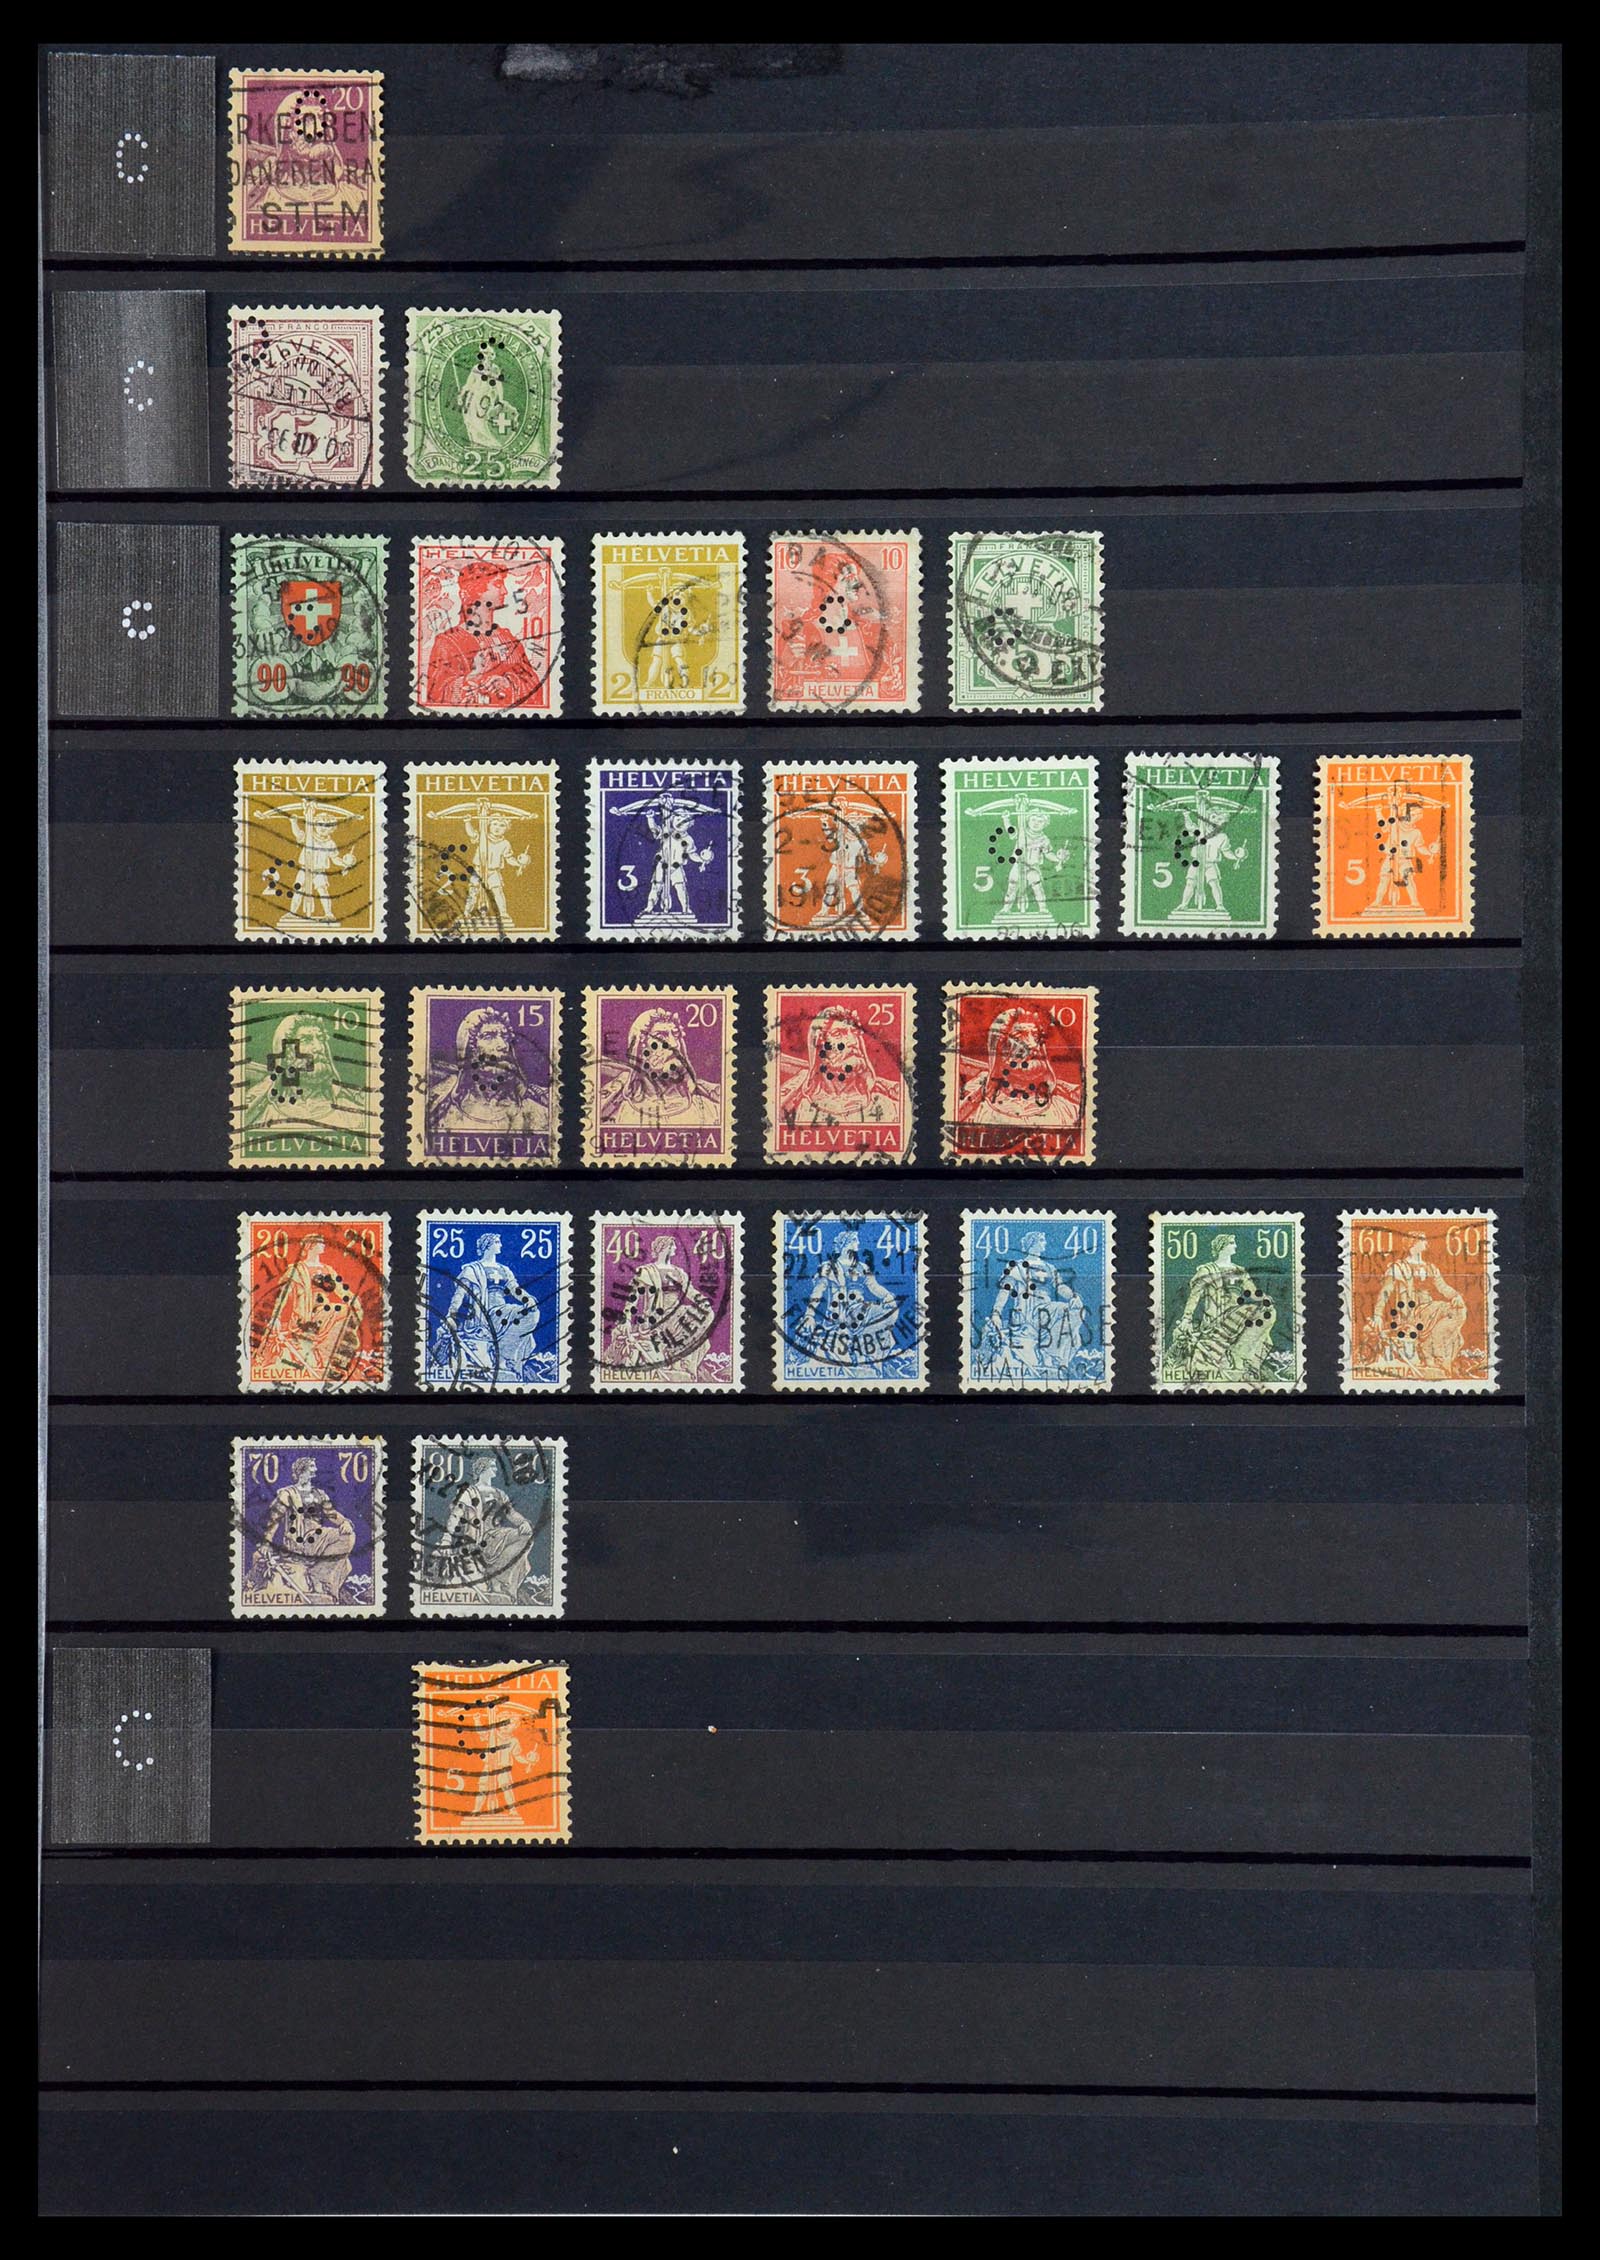 36372 009 - Stamp collection 36372 Switzerland perfins 1880-1960.